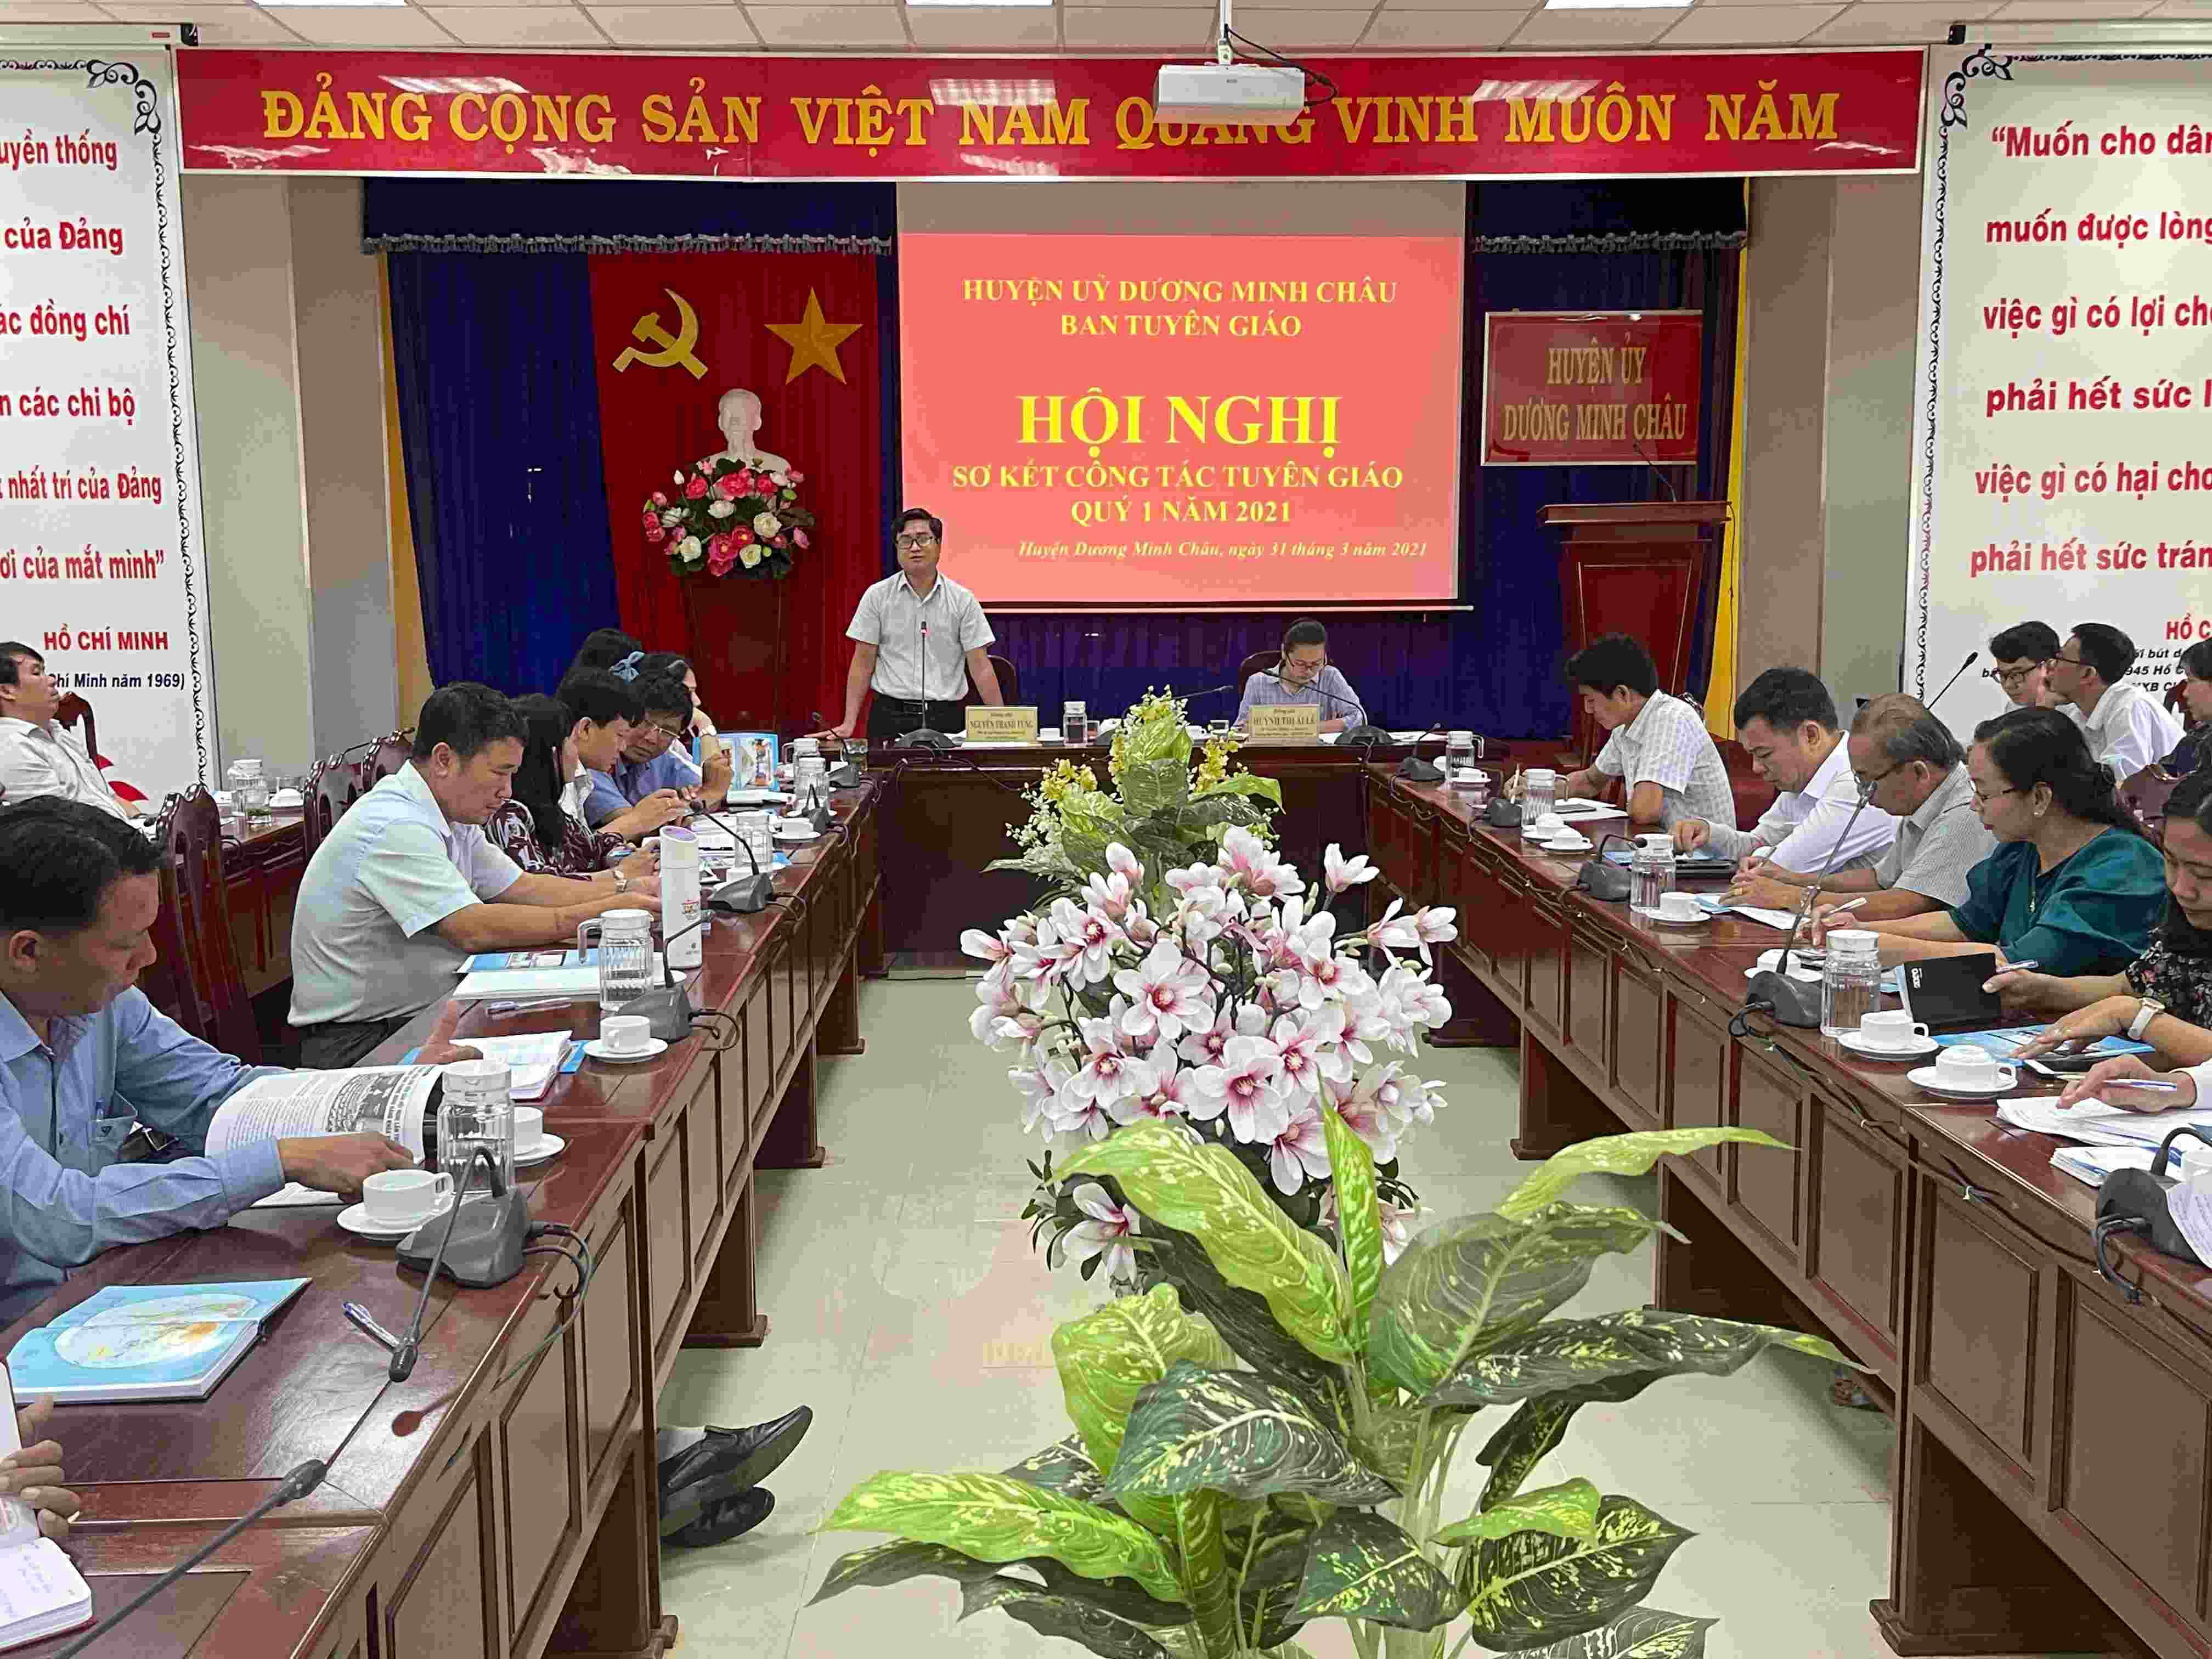 Ban Tuyên giáo Huyện ủy Dương Minh Châu: Sơ kết công tác Tuyên giáo quý I năm 2021